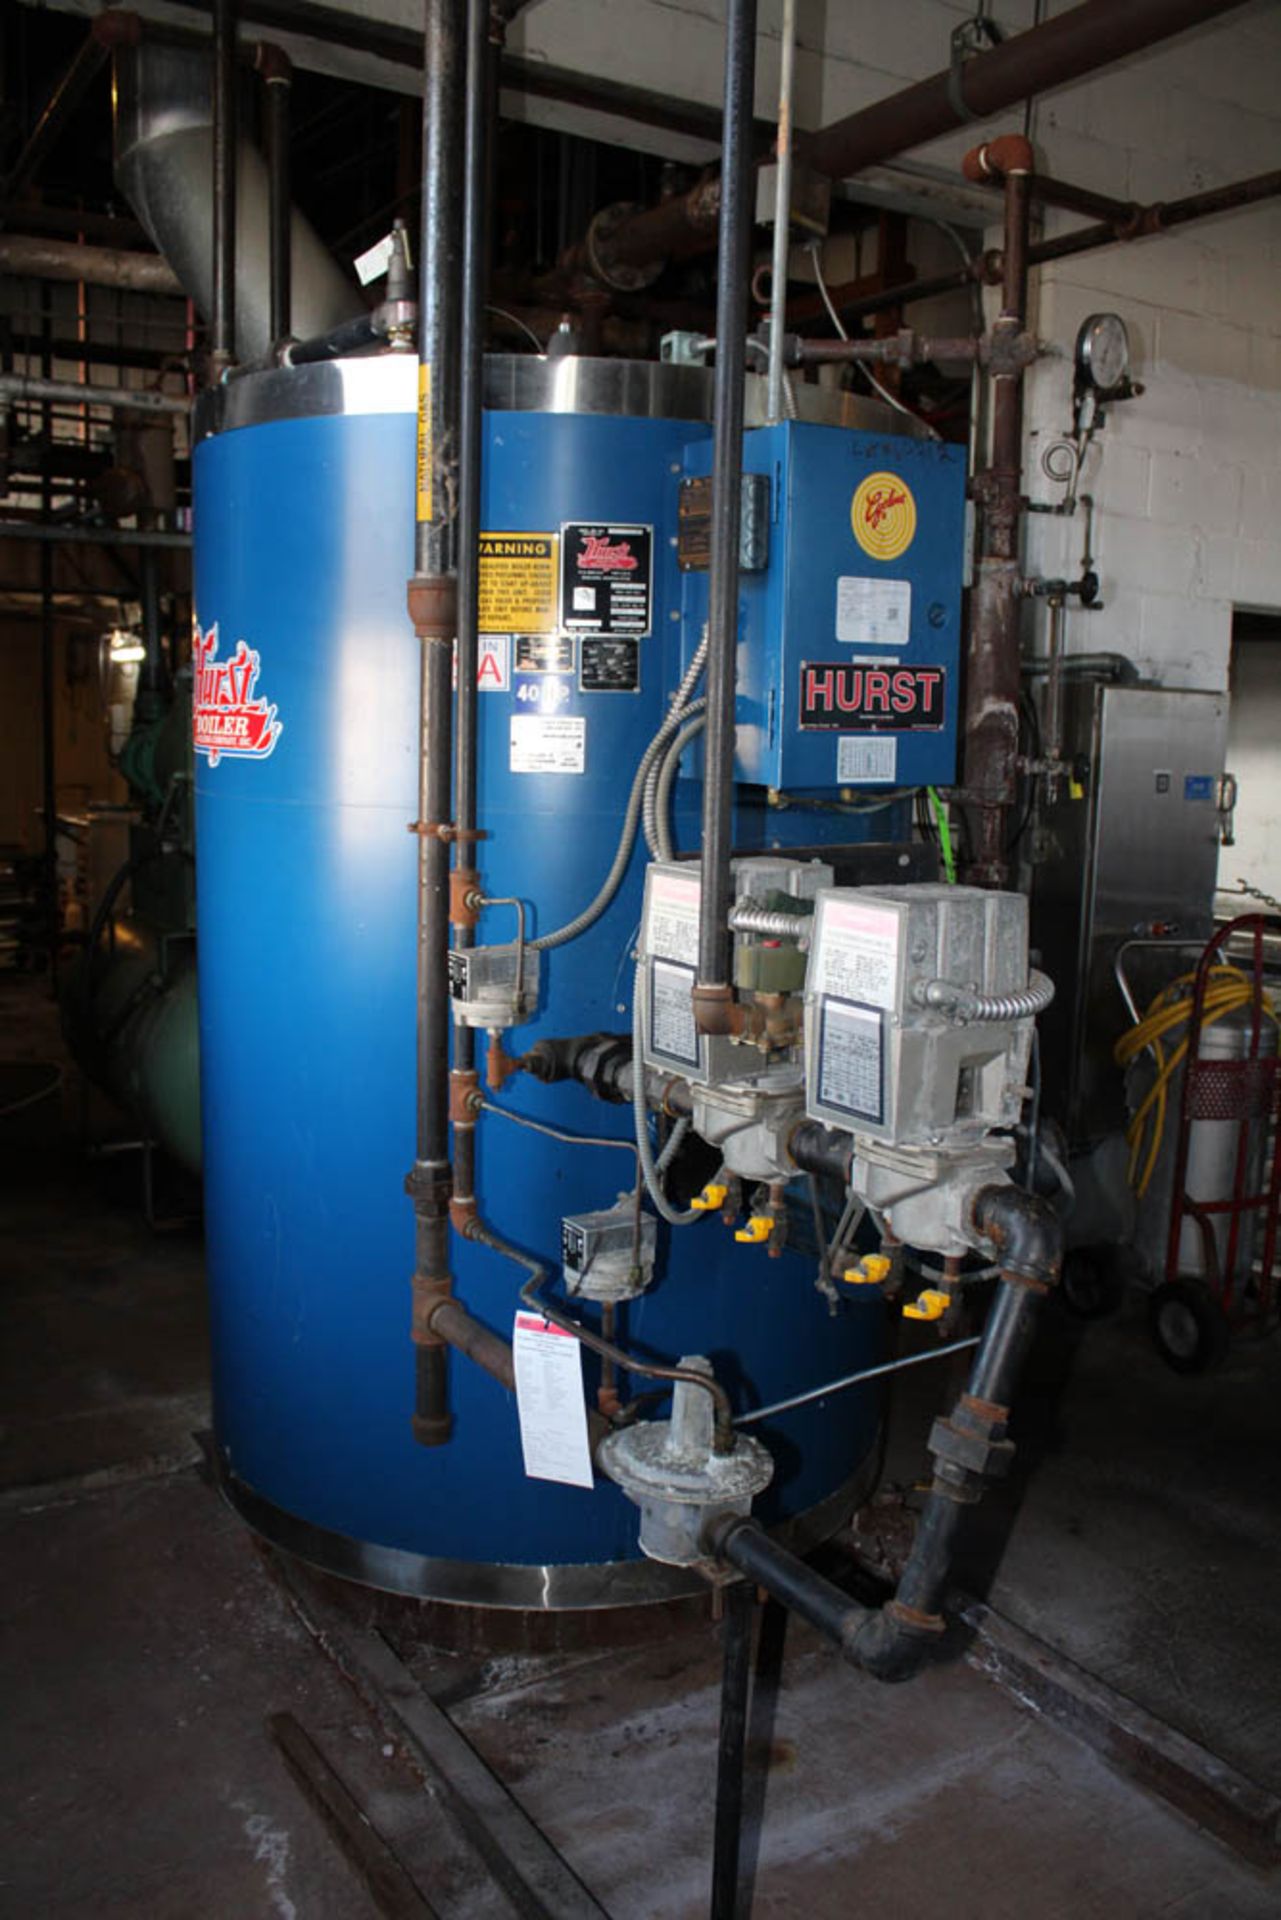 Hurst Boiler and Welding Company Boiler - Image 2 of 4